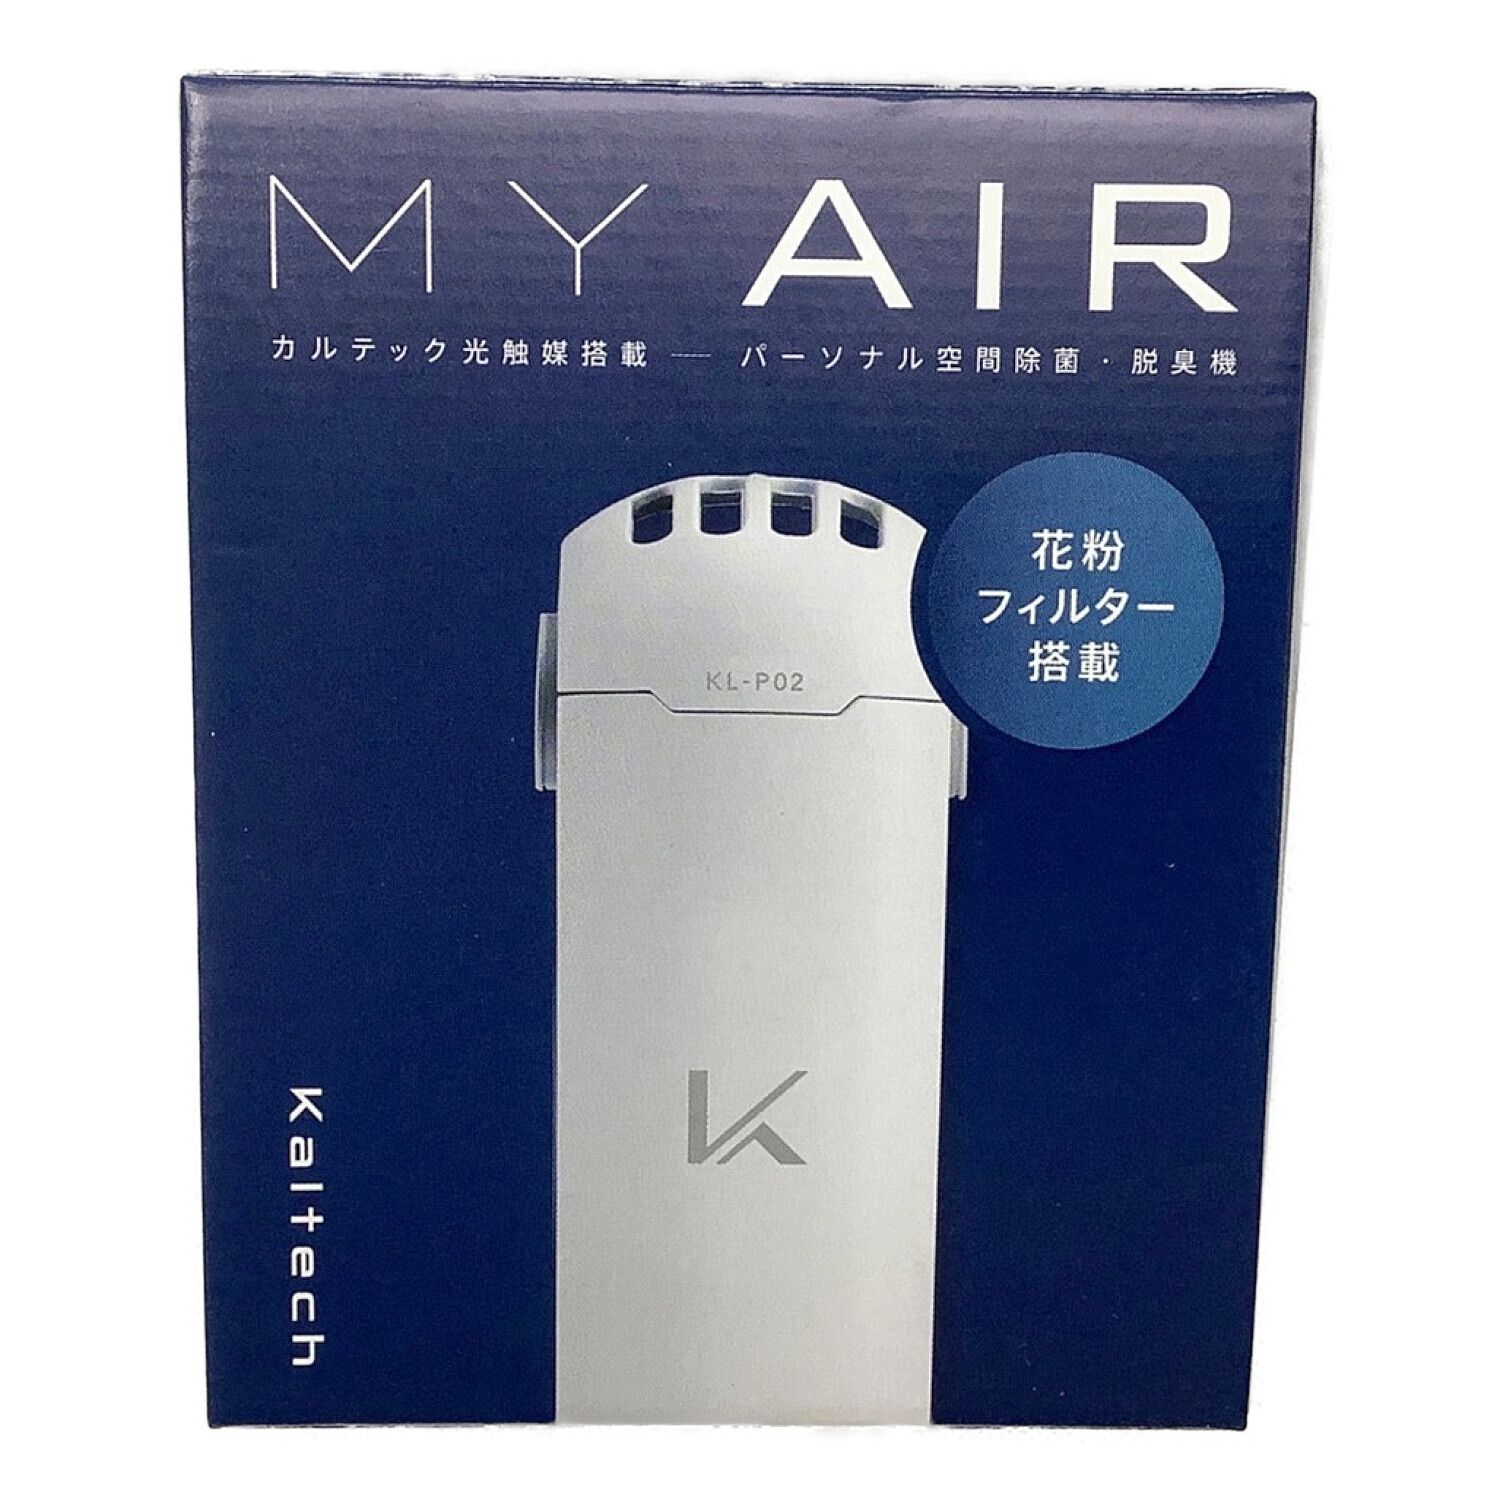 リコール対象外】カルテック KL-P02-W MY AIR 携帯型 除菌脱臭機